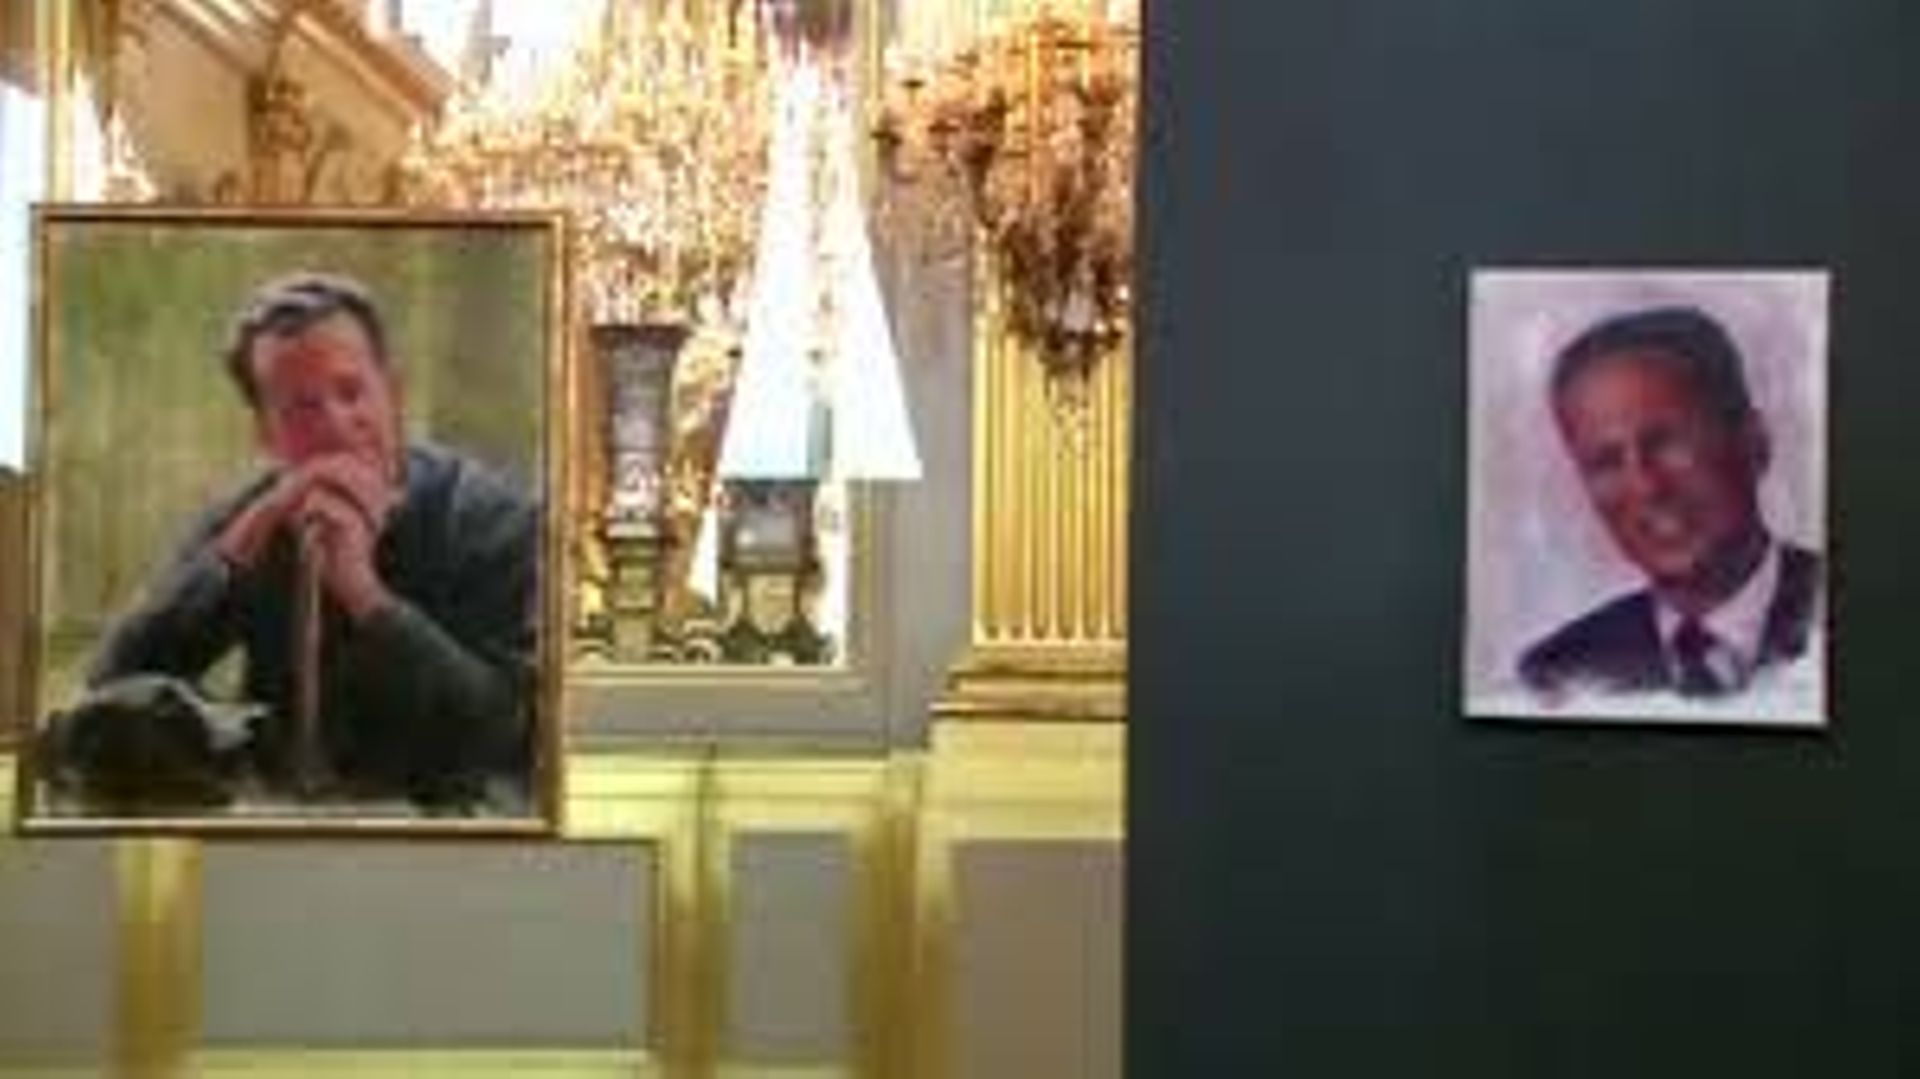 Philippe peint… Deux de ses toiles seront exposées au Palais royal cet été !